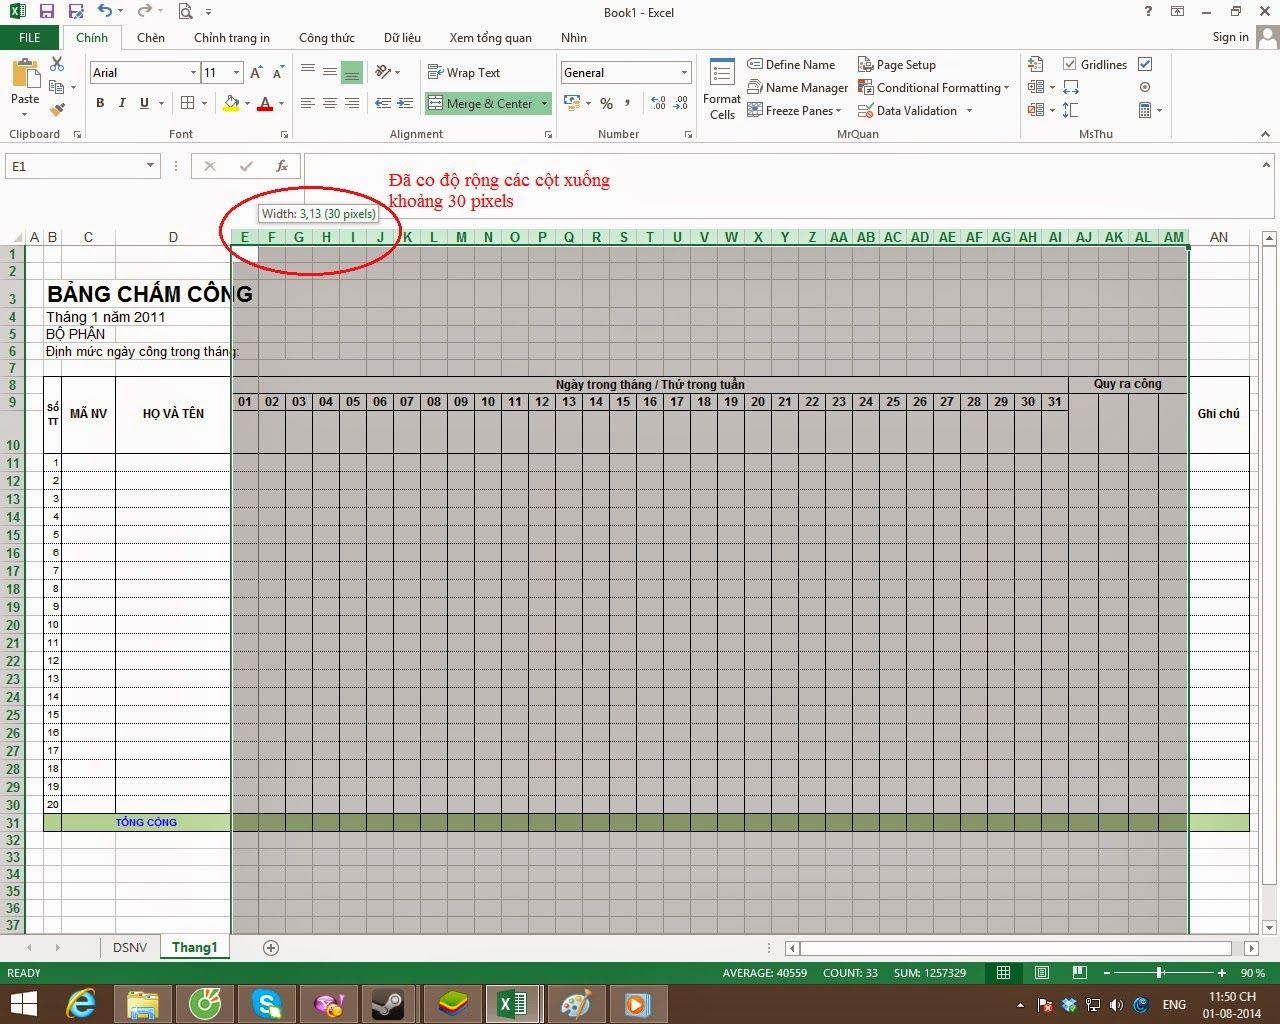 Cách tính bảng chấm công trong excel được thực hiện như thế nào? Hướng dẫn cách tạo bảng chấm công trên Excel chi tiết nhất 34